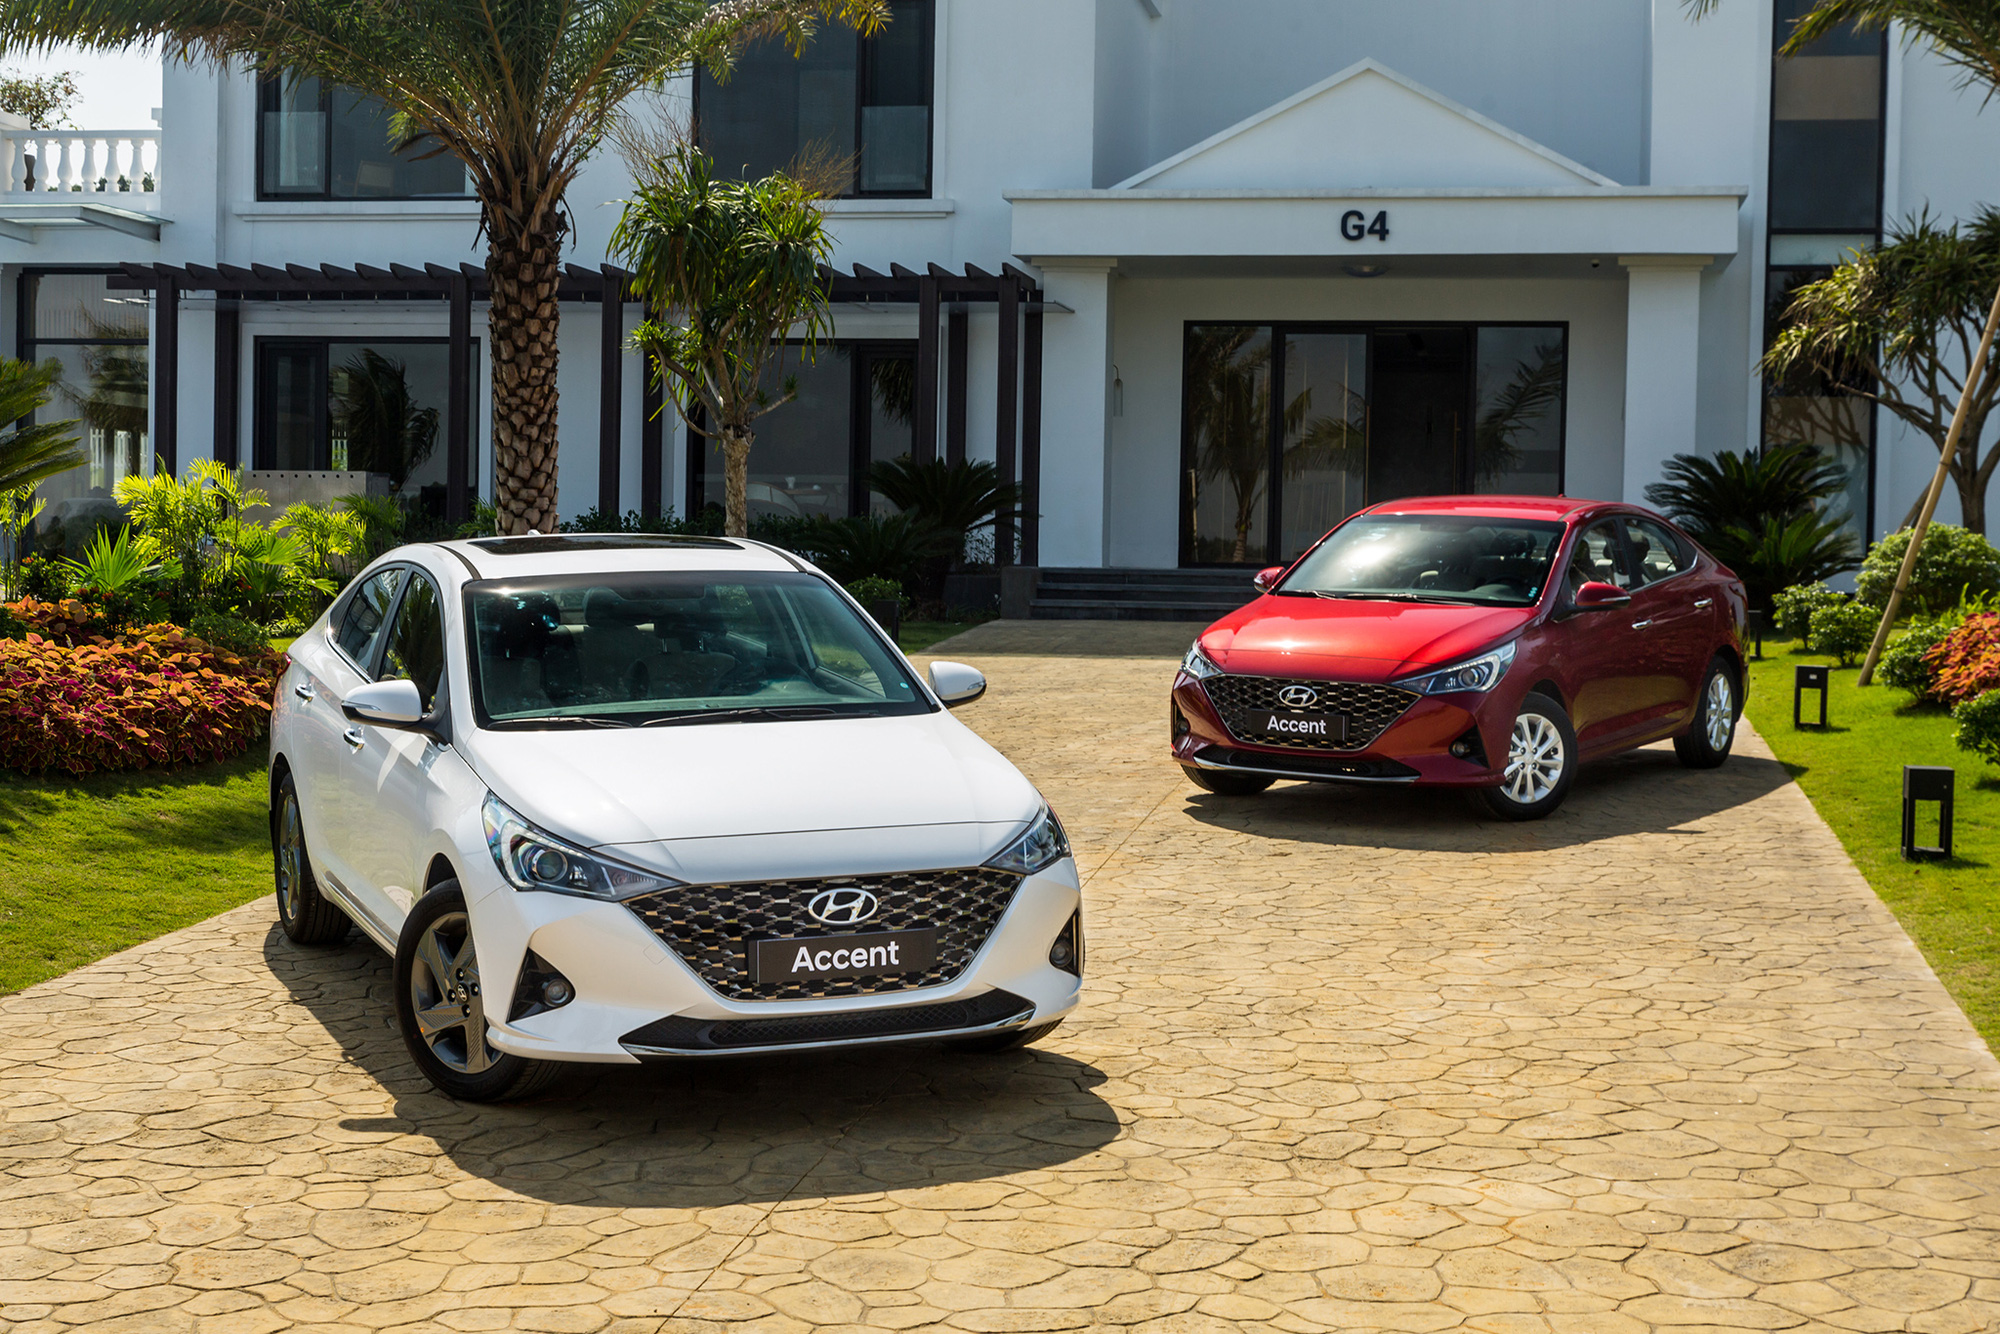 Chênh 116 triệu đồng, đây là sự khác biệt giữa 4 phiên bản Hyundai Accent 2021 tại thị trường Việt Nam - Ảnh 1.